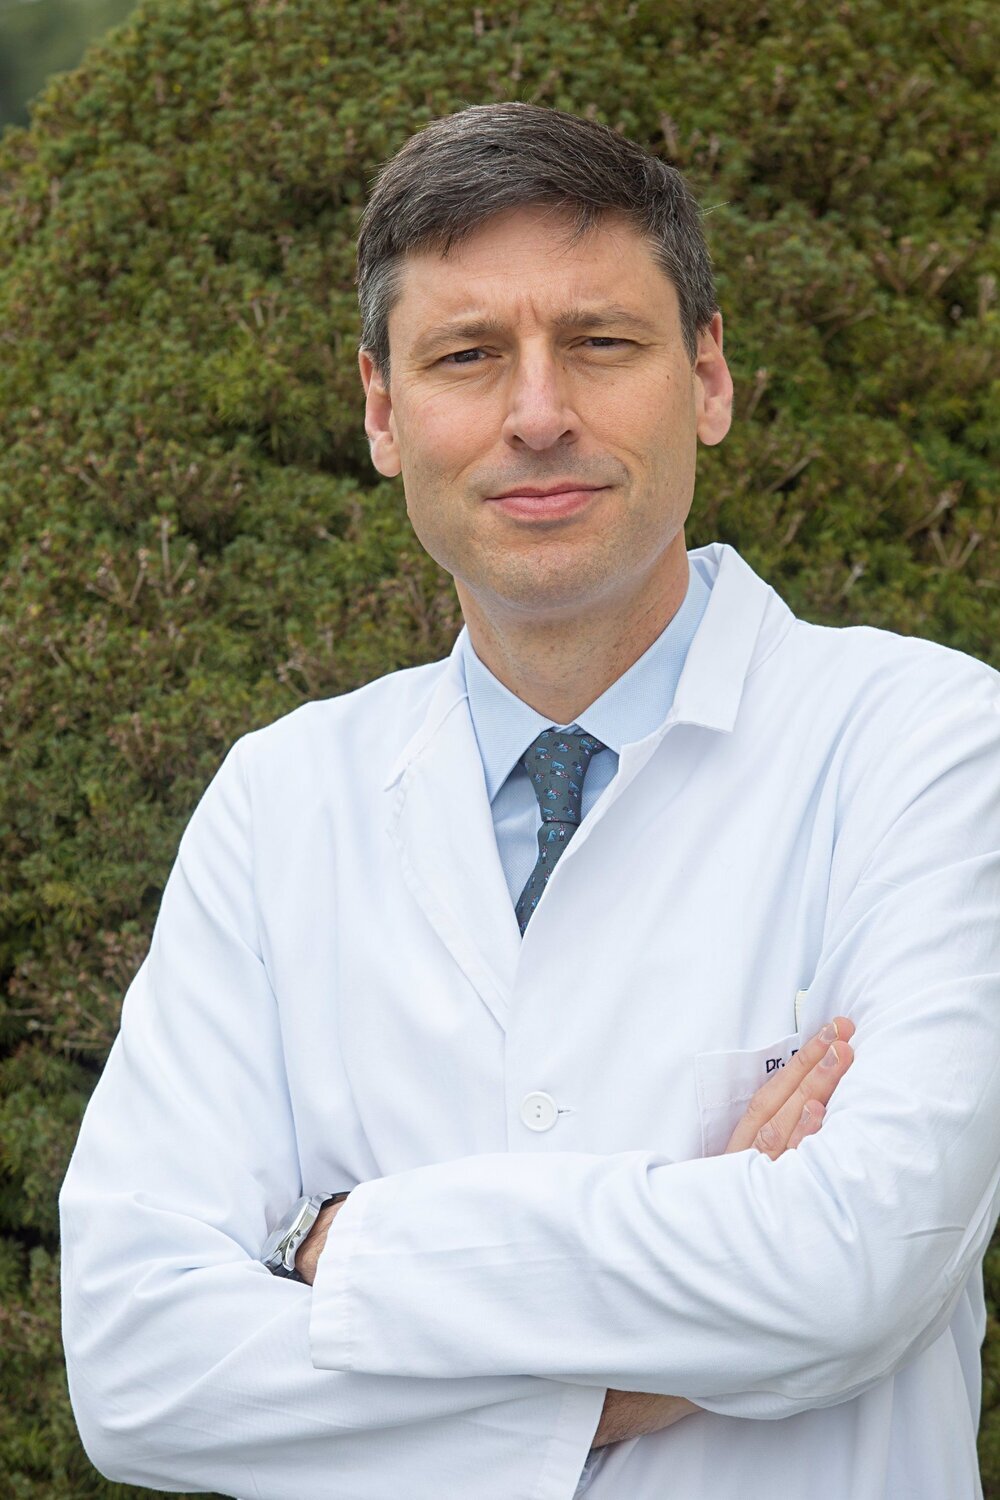 El doctor Antonio González, investigador principal del estudio y codirector del Departamento de Oncología Médica de la Clínica Universidad de Navarra.